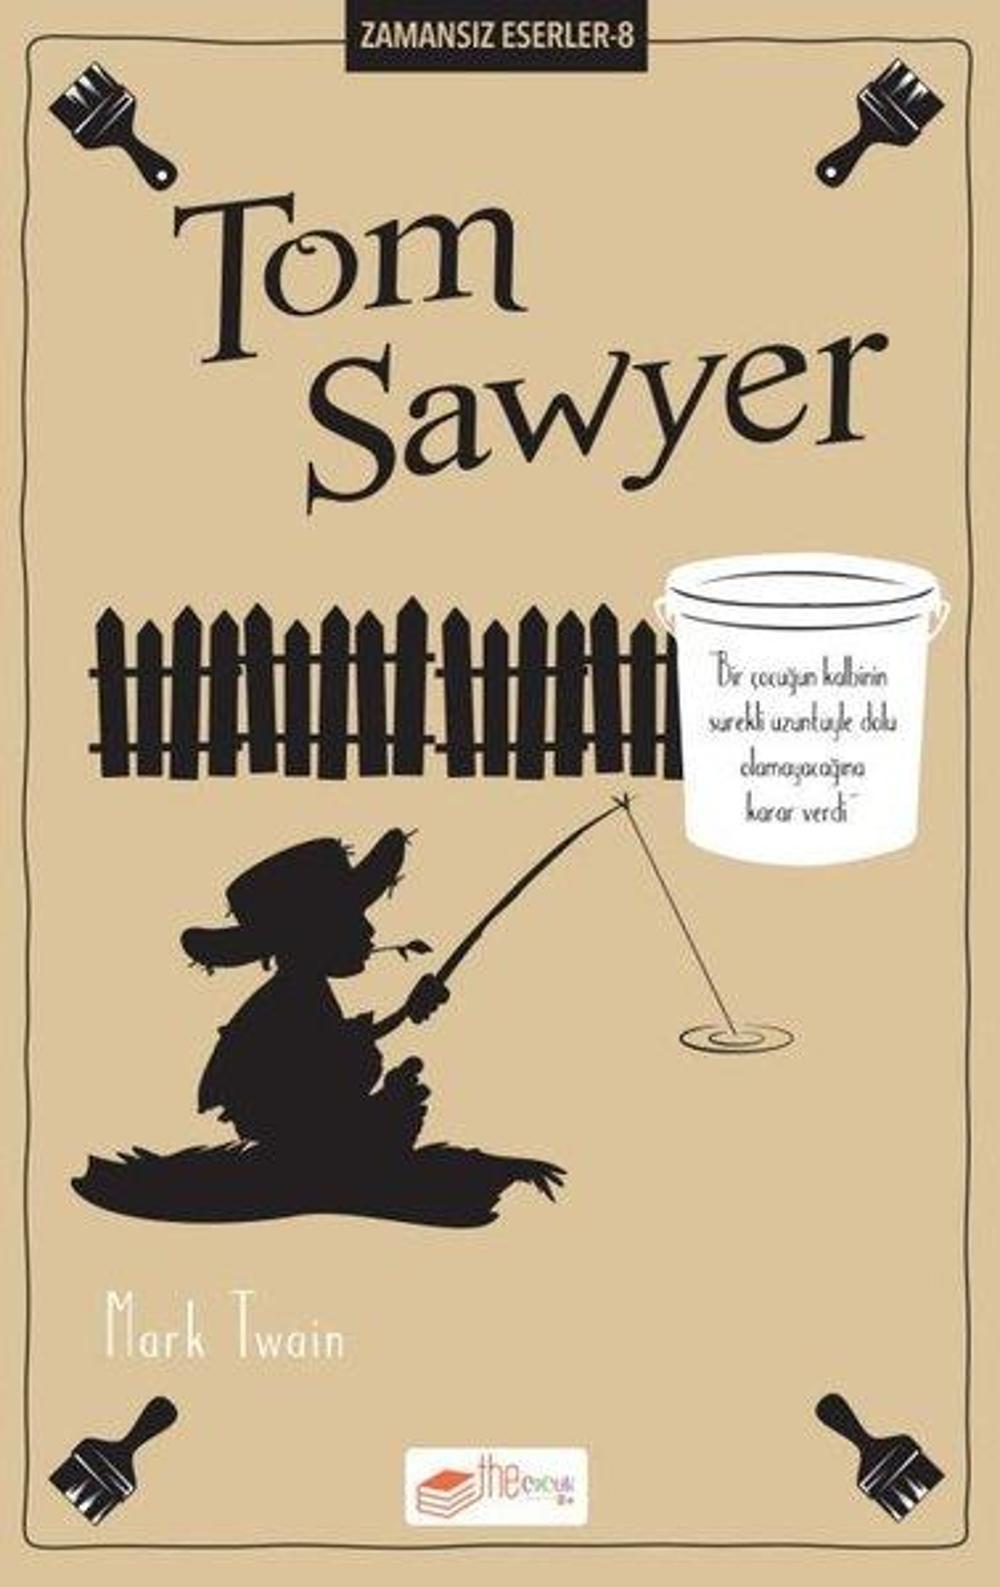 Tom Sawyer - Zamansız Eserler 8 | The Çocuk